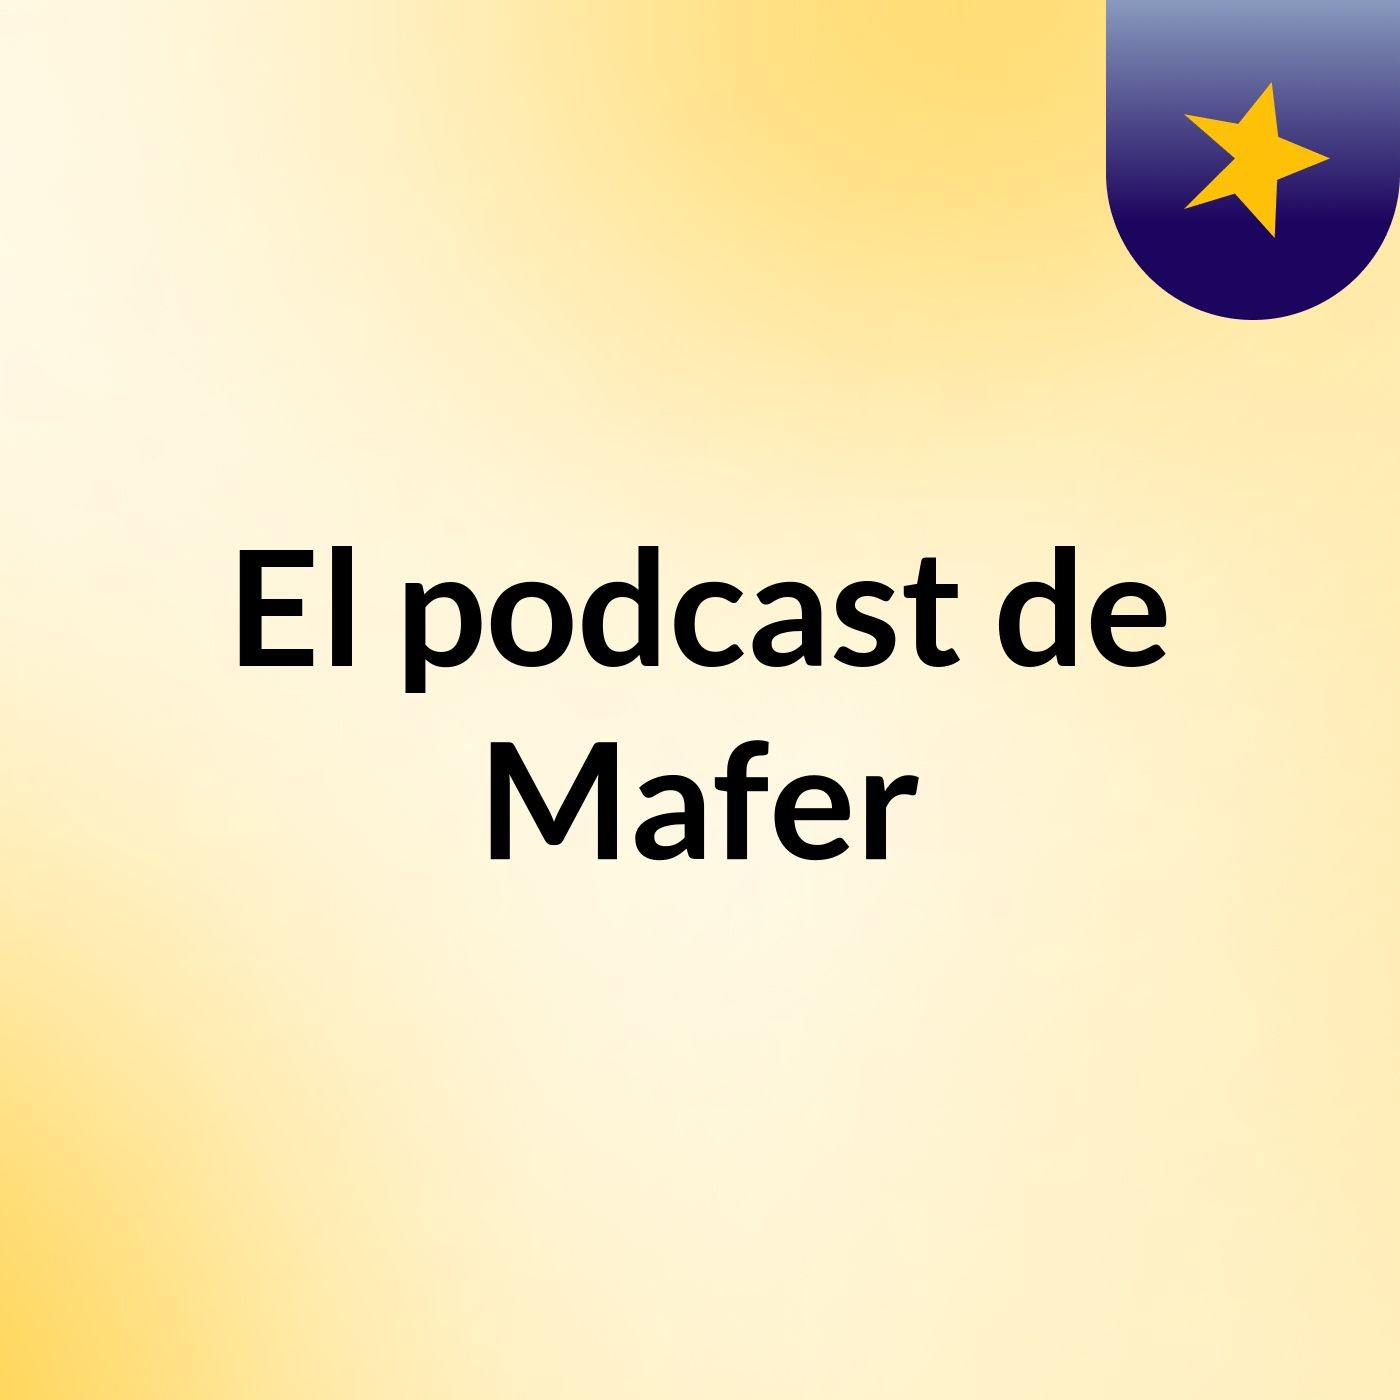 Episodio 12 - El podcast de Mafer